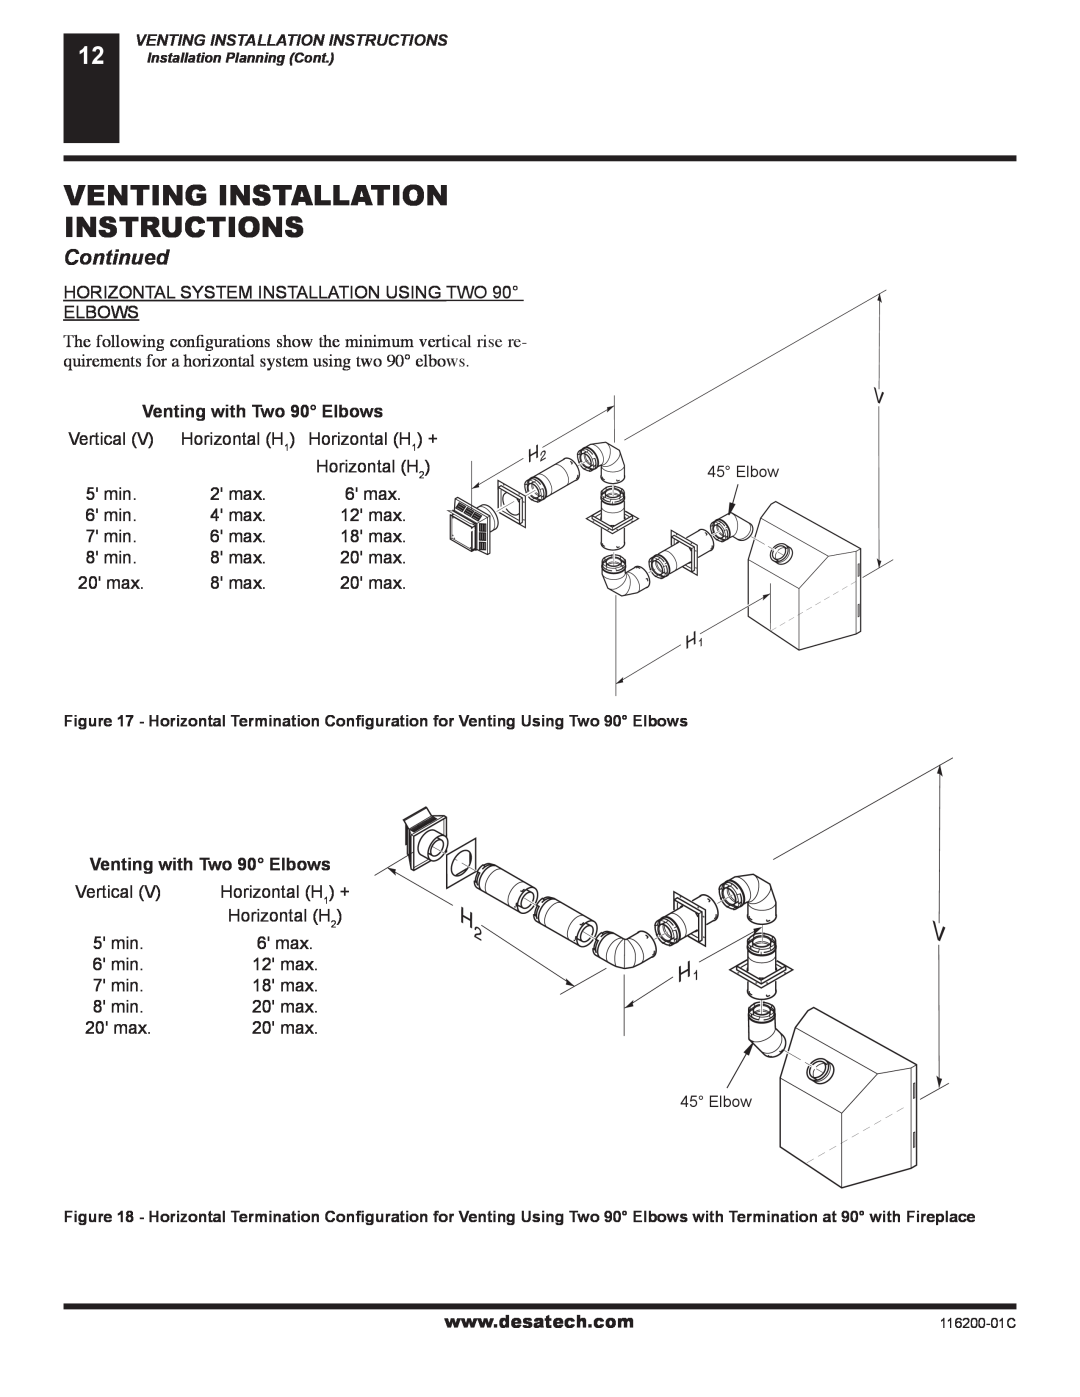 Desa CGCDV36NR, (V)VC36P installation manual Venting Installation Instructions, Continued, Venting with Two 90 Elbows 